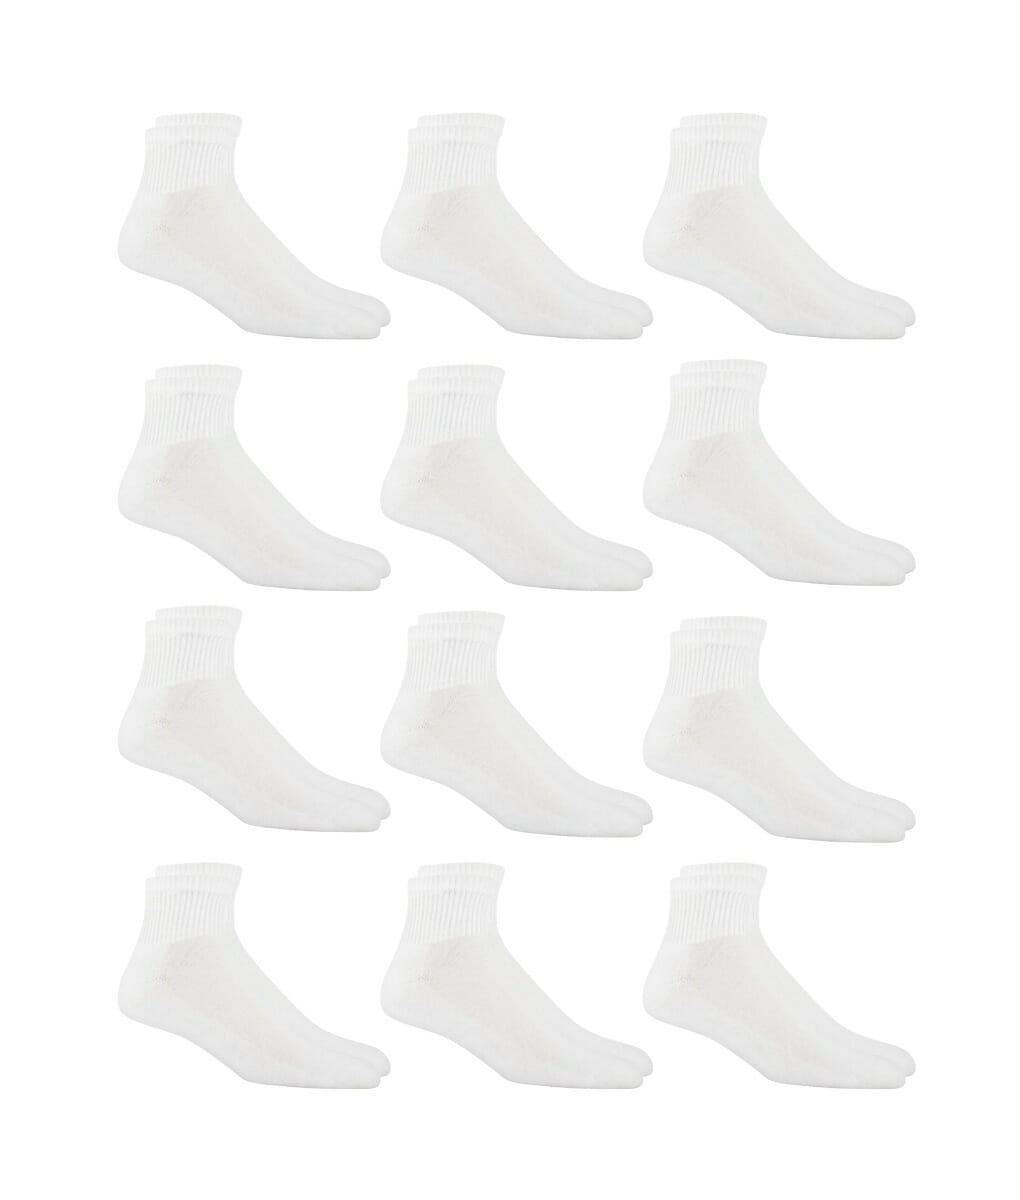 Πακέτο ανδρικές ημίκοντες κάλτσες σε λευκό χρώμα 12 ζεύγη 211539 12pack White